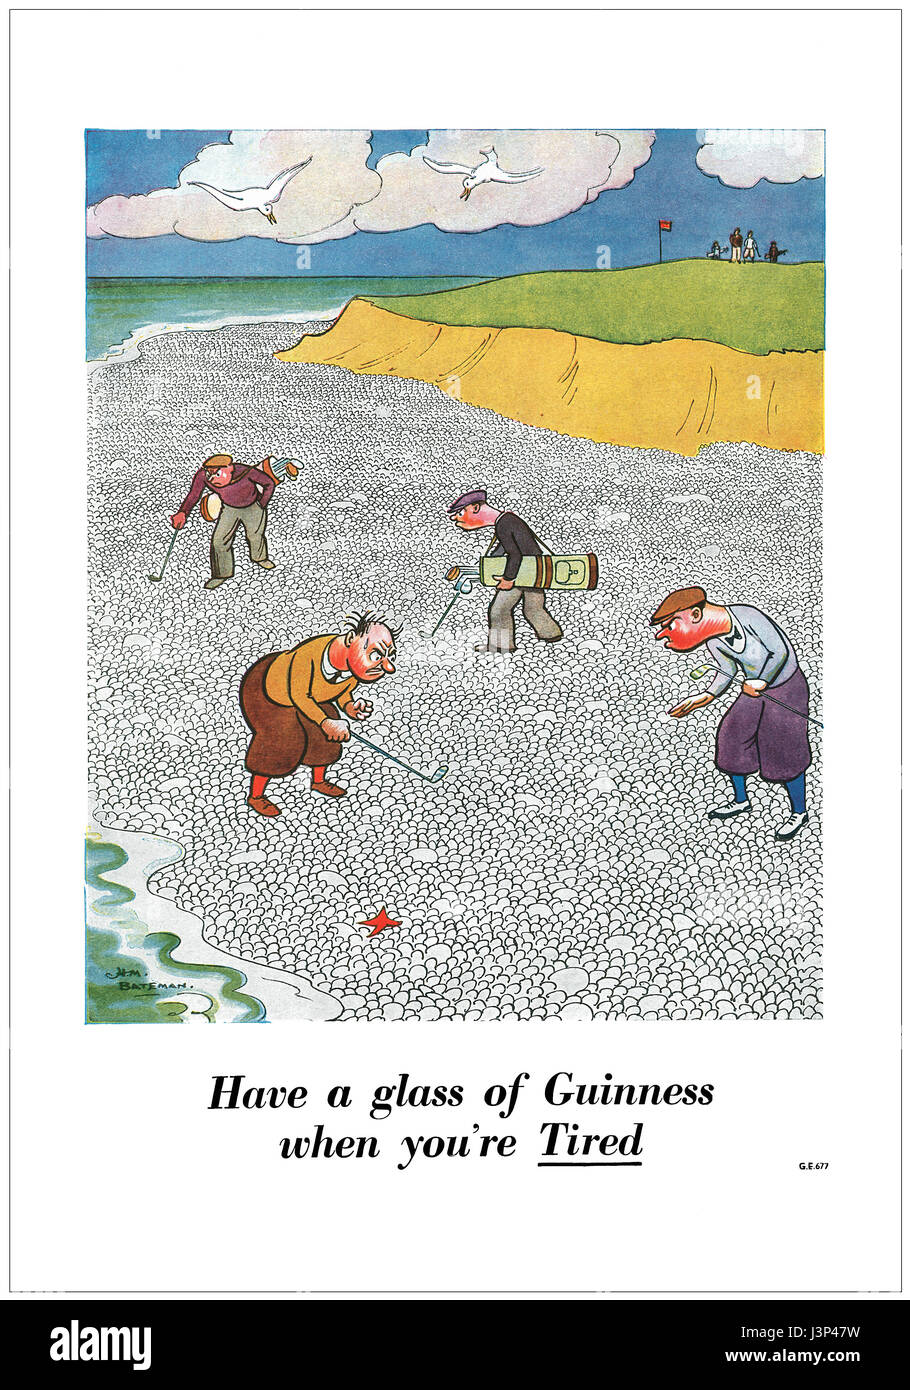 1946 British pubblicità per la birra Guinness, illustrato da H.M. Bateman. Foto Stock